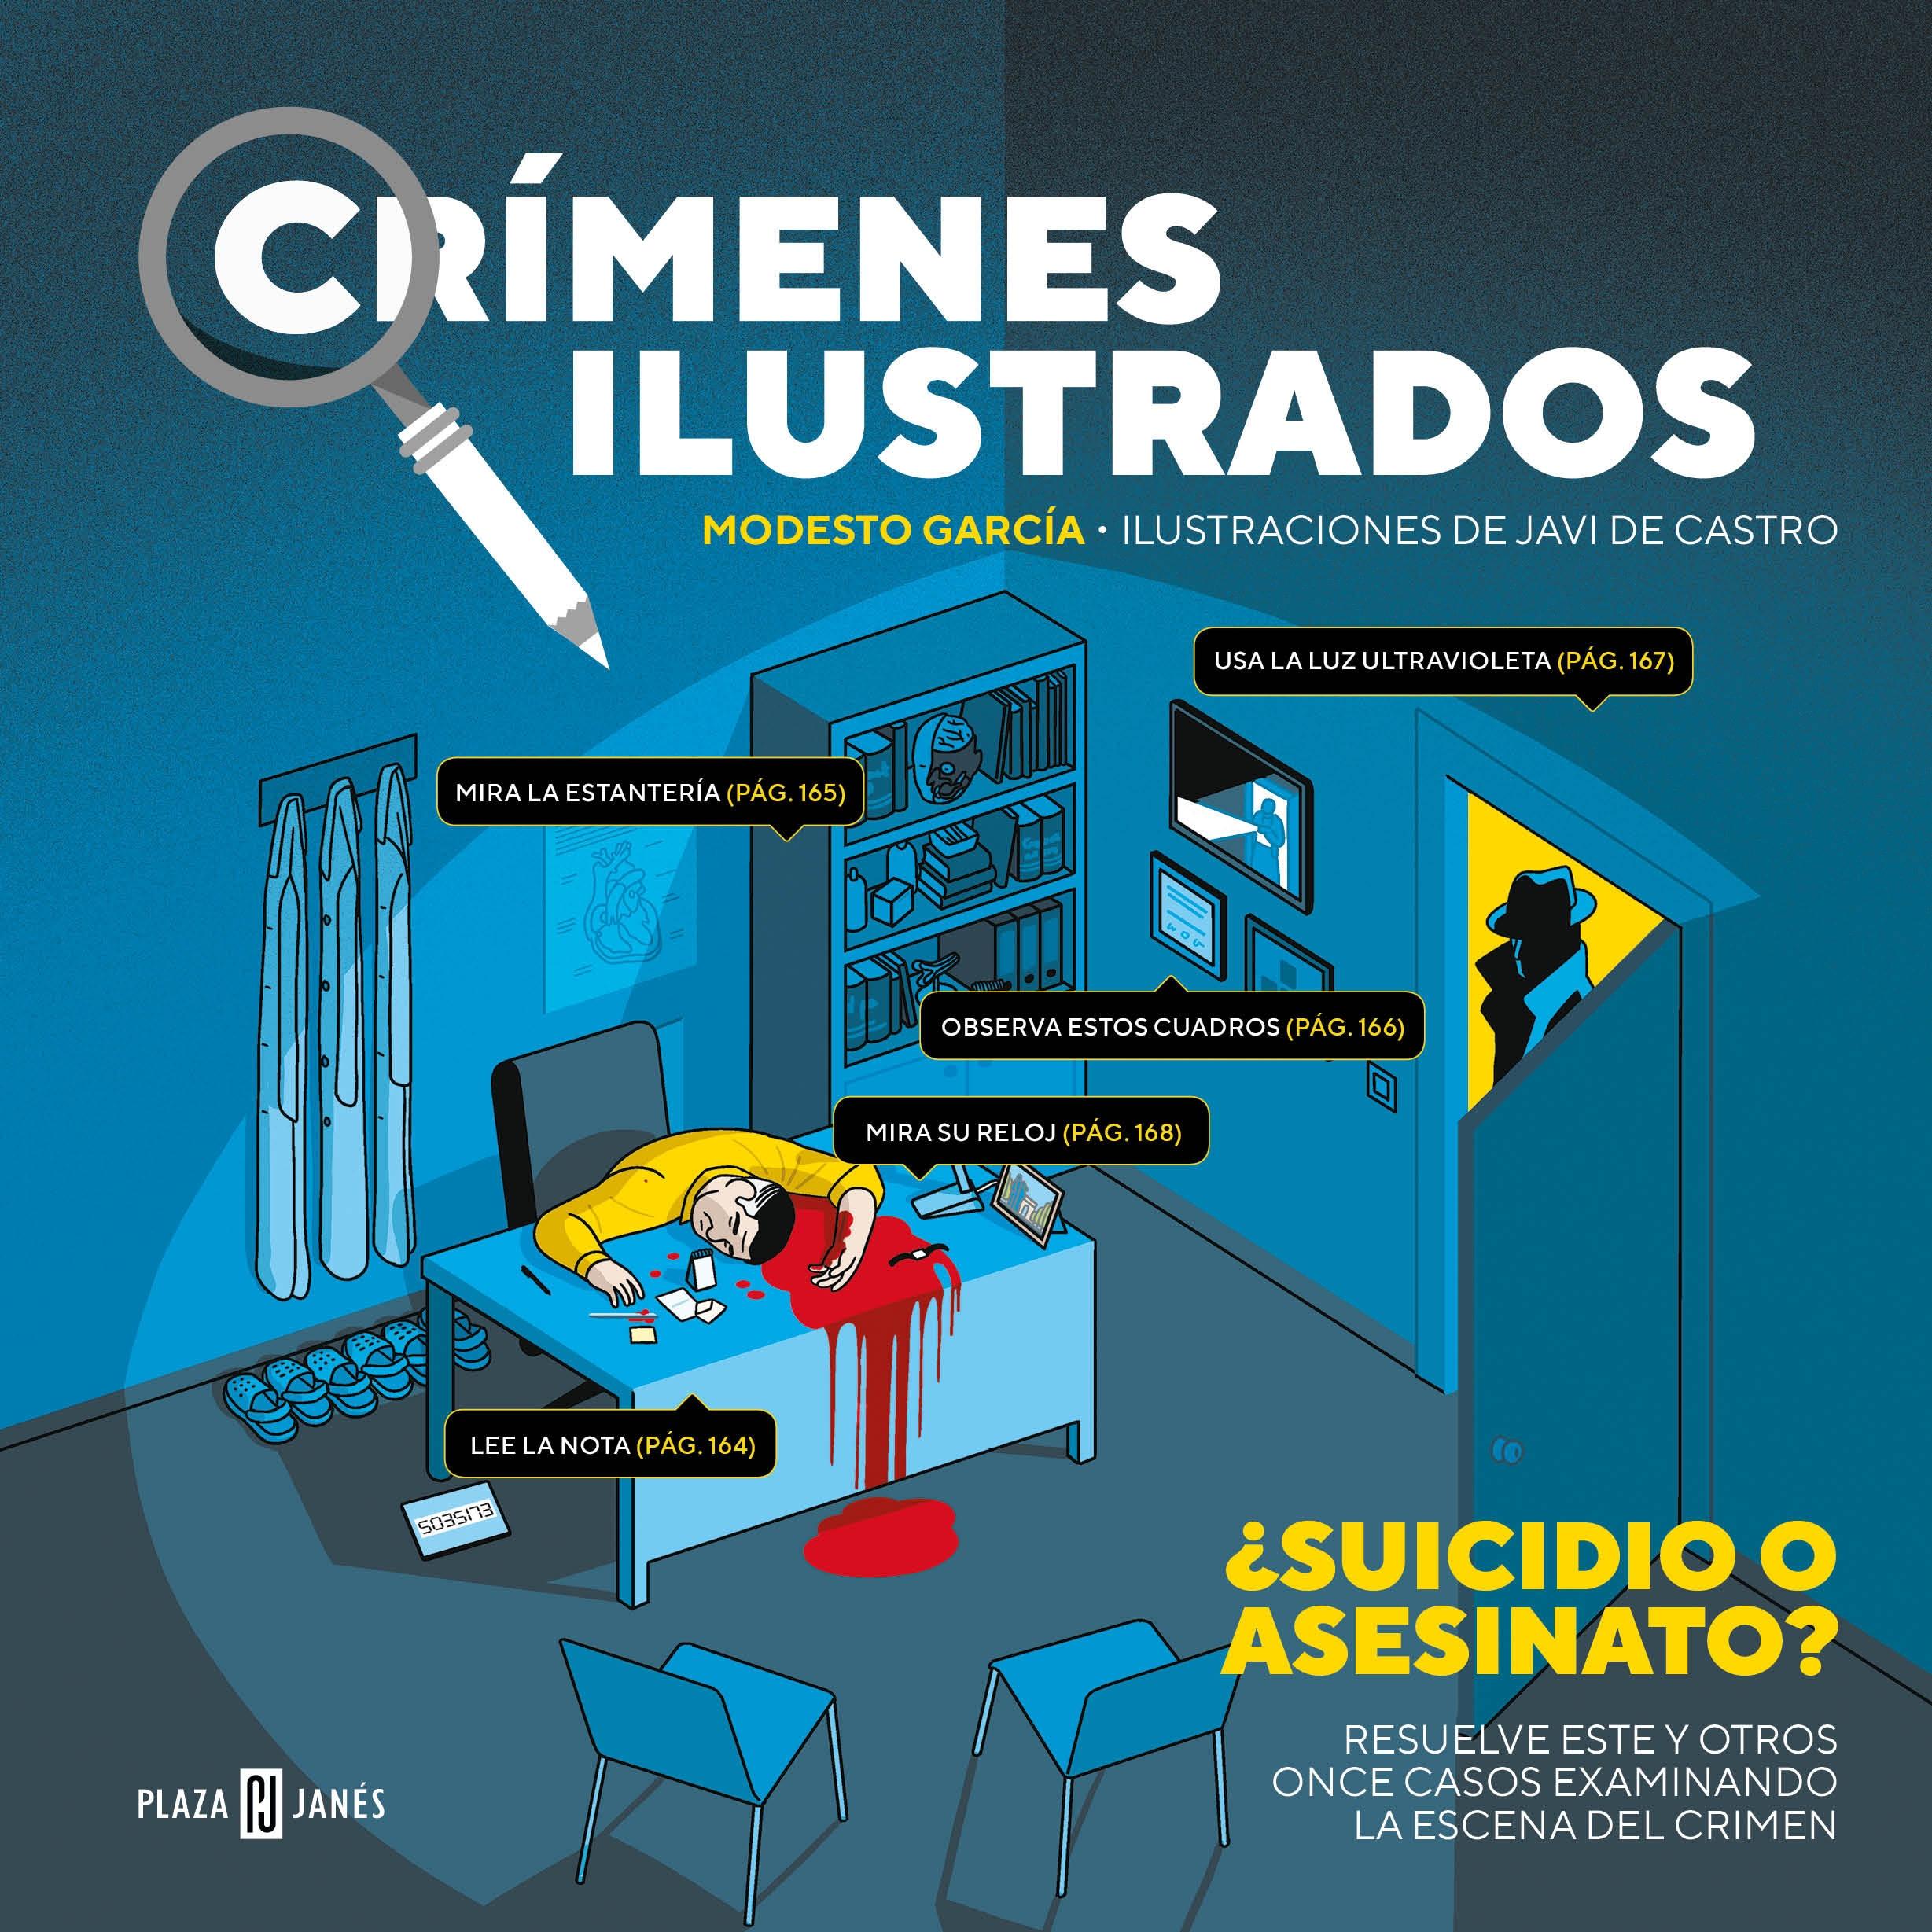 Crímenes ilustrados "Resuelve los casos examinando la escena del crimen"